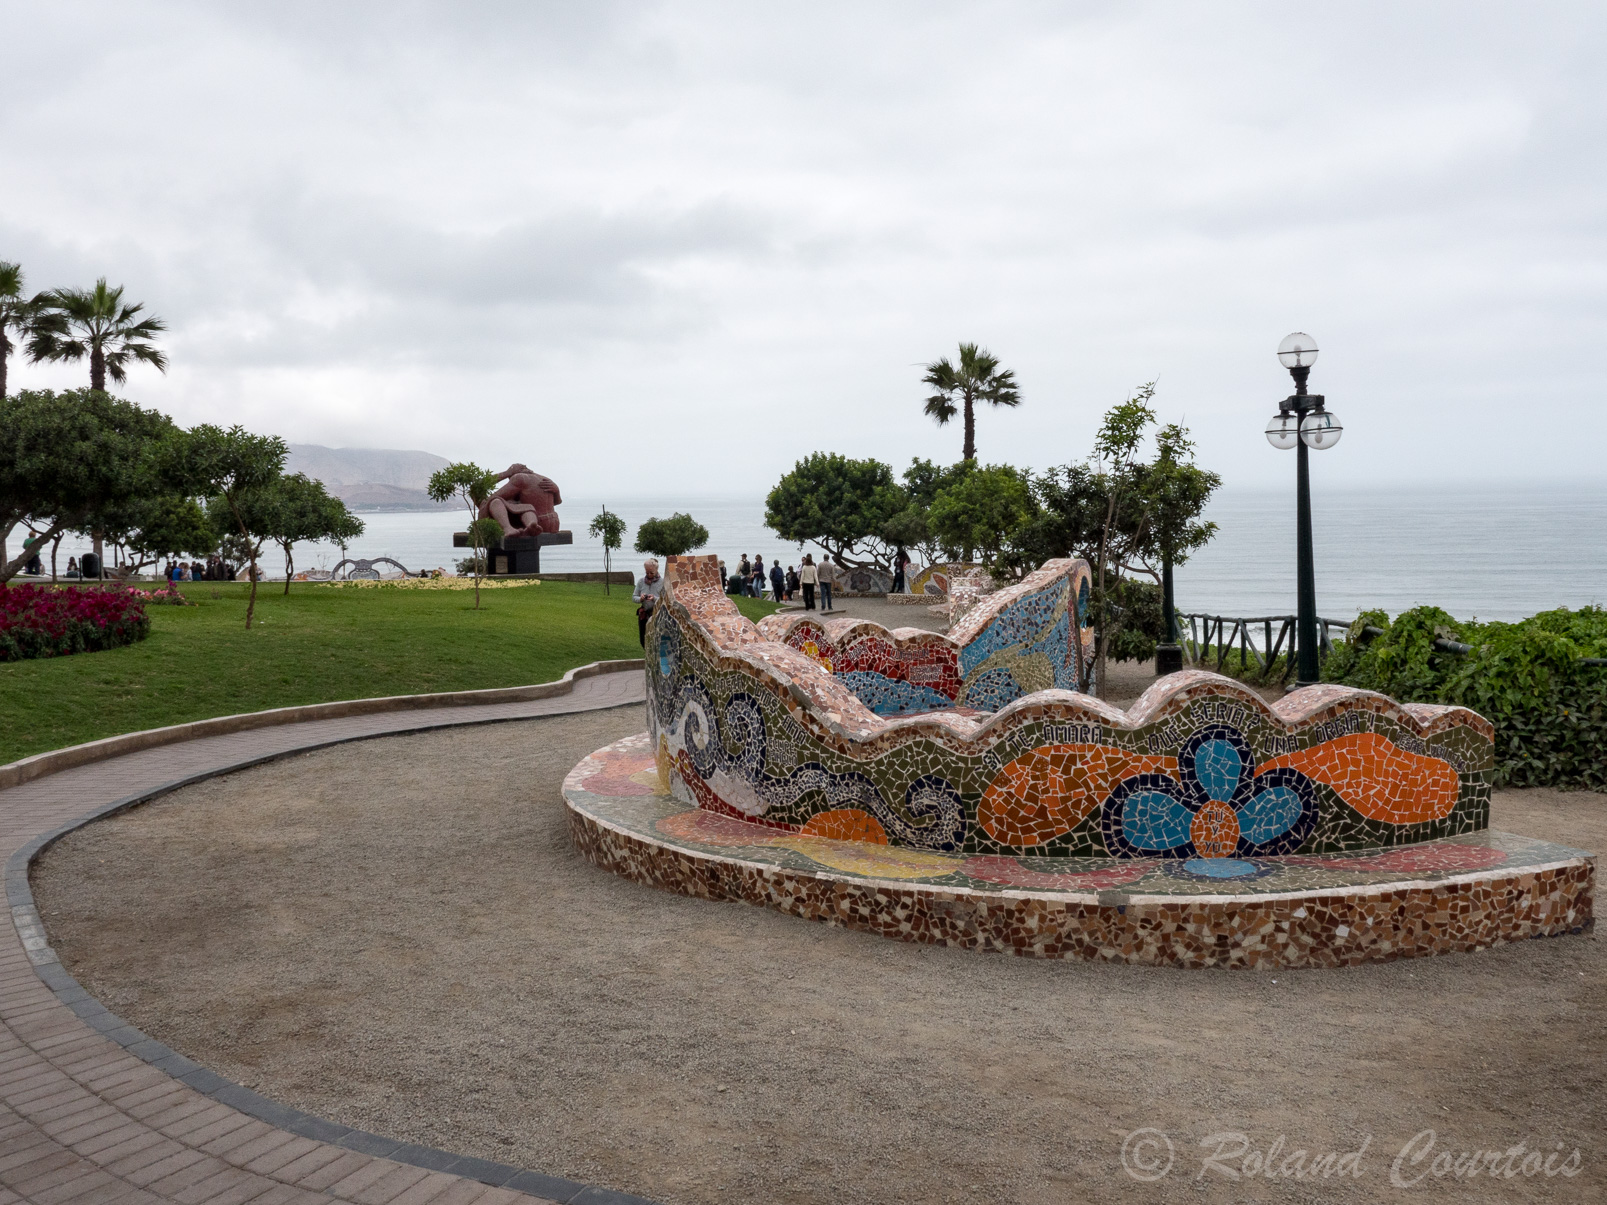 Situé face à l'Océan Pacifique, ce parc est le fruit de l’imagination de Victor Delfin inspiré par Gaudi